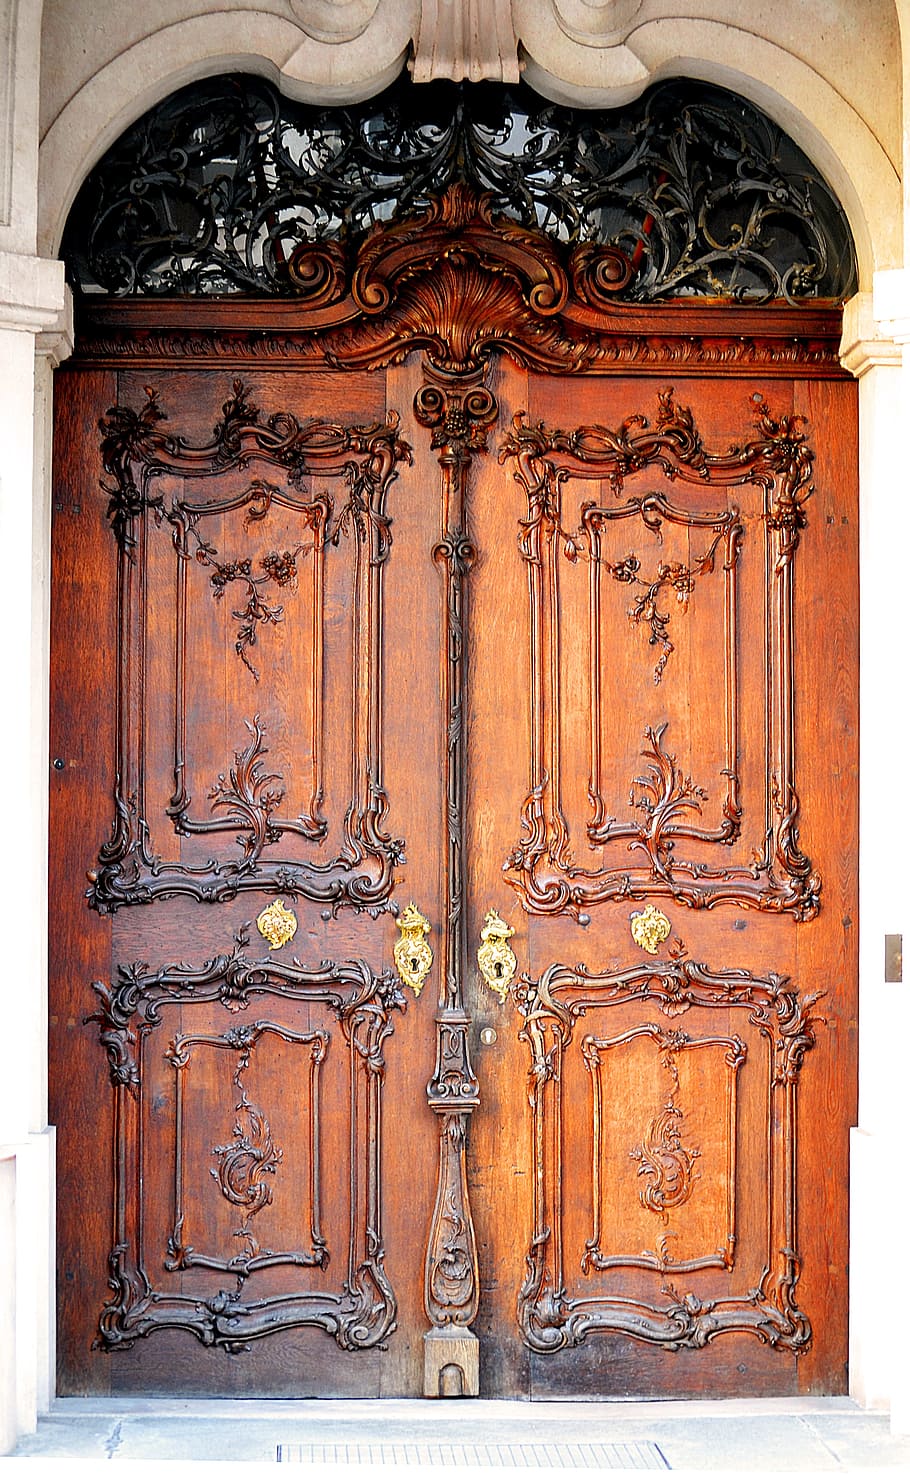 Puerta, Madera, Entrada, Antigua, puerta vieja, entrada de la casa, puerta principal, portal, abierto, maderas